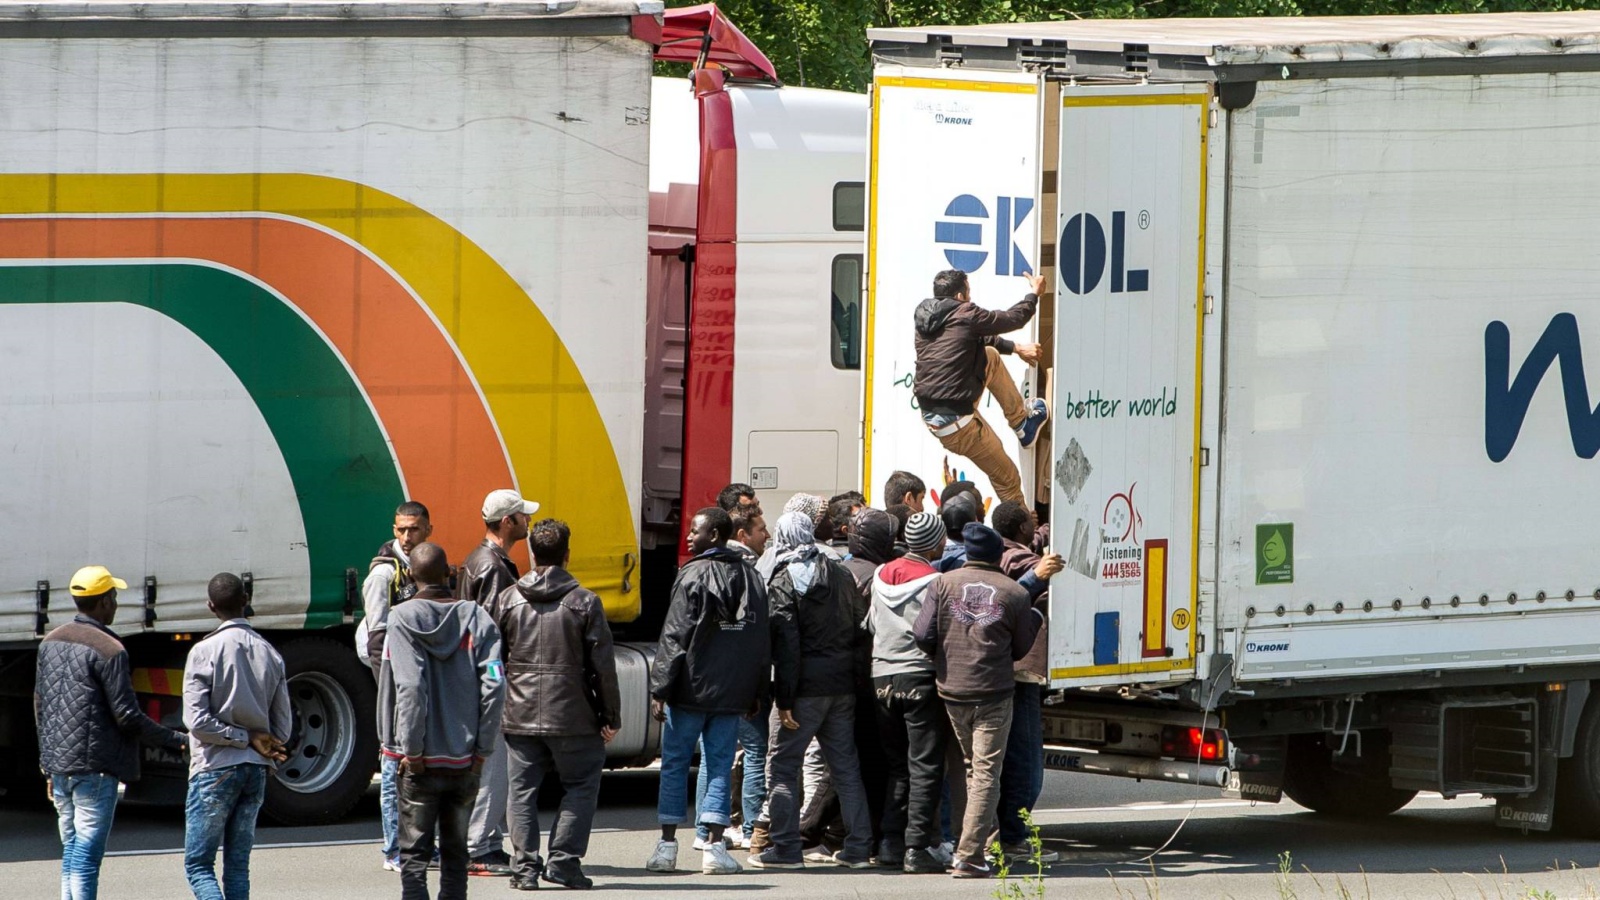 مهاجحرون غير شرعيين يستقلون شاحنة بالقرب من كاليه بفرنسا للتوجه إلى إنجلترا. أ ف ب